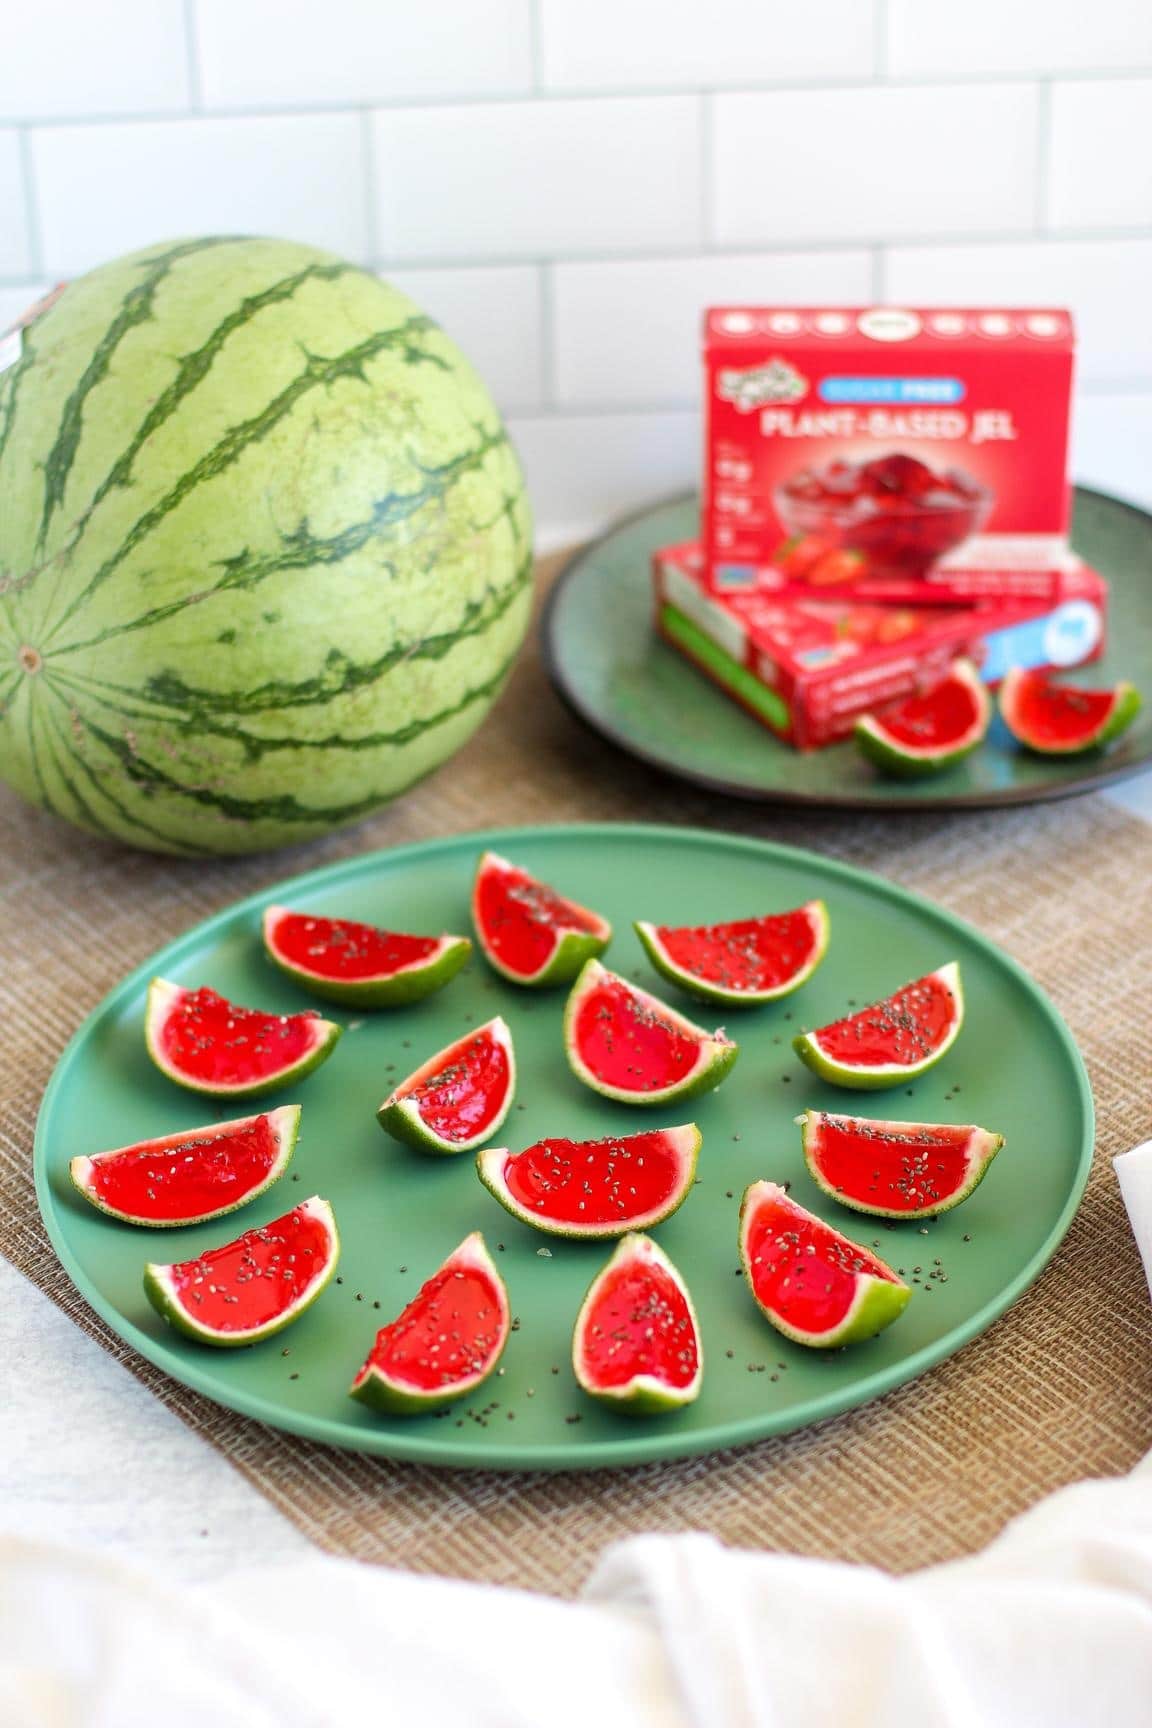 Mini Strawberry Limeade Watermelon Jels big watermelon